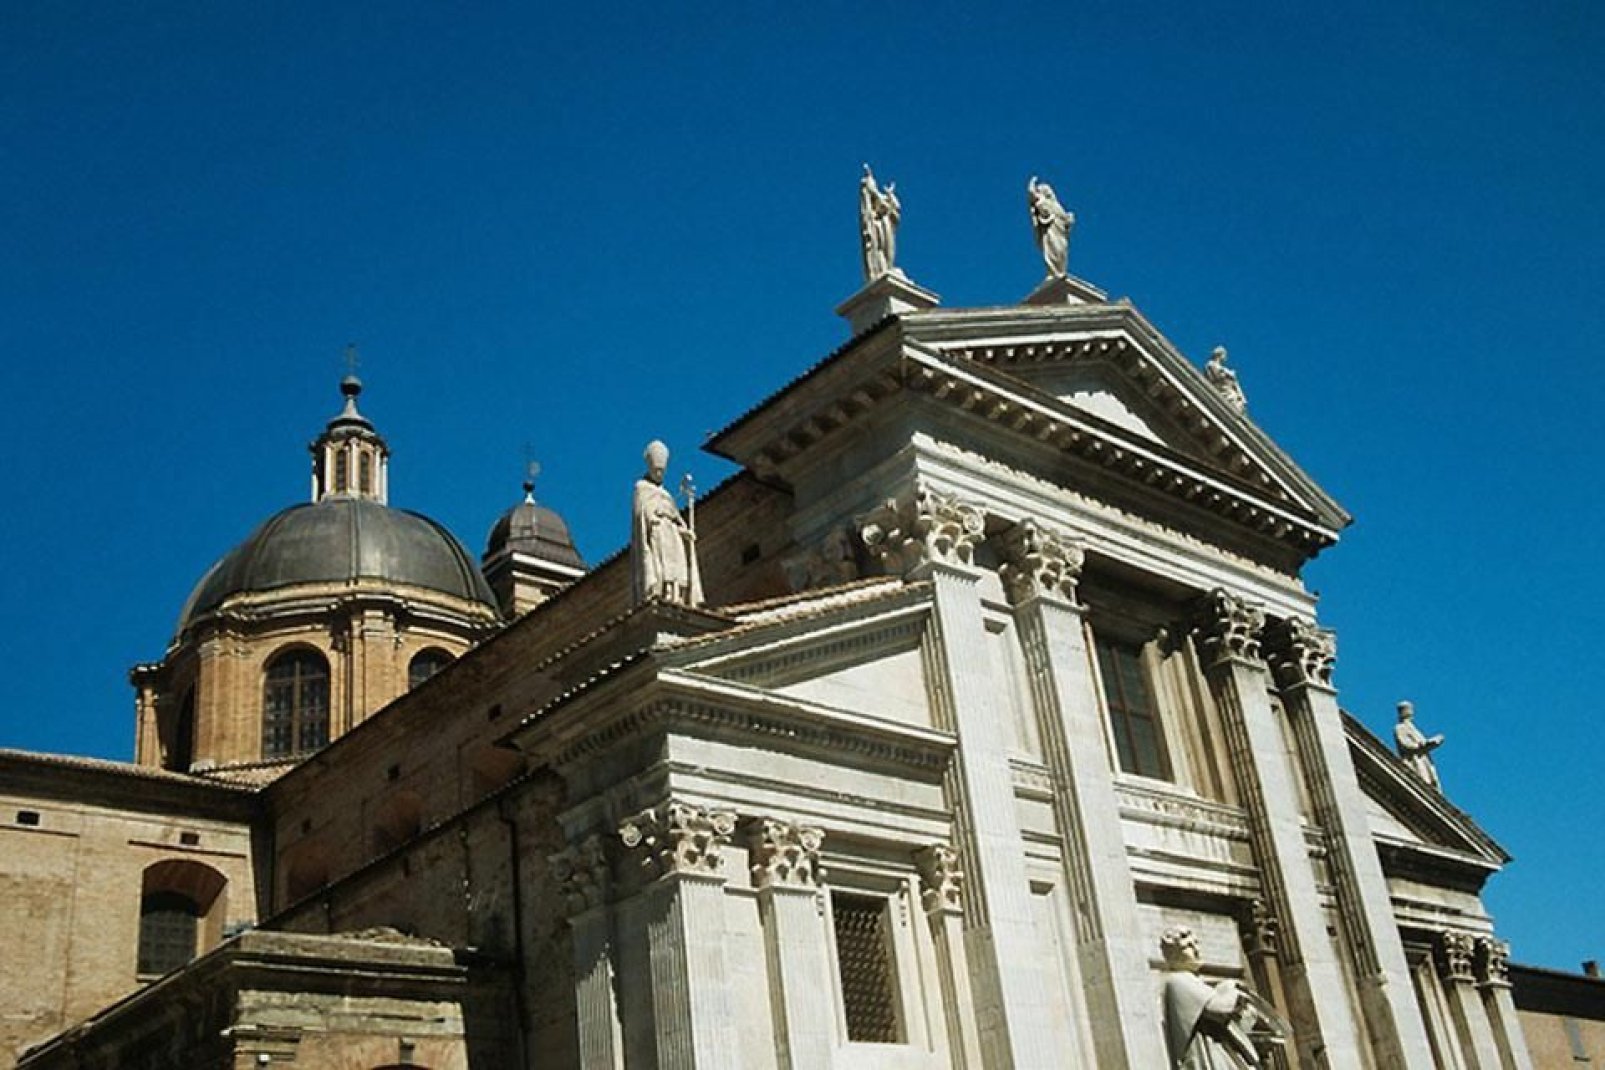 La catedral de Urbino, dedicada a Santa María Assunta, fue construida tras un terremoto que destruyó la antigua iglesia en 1789.